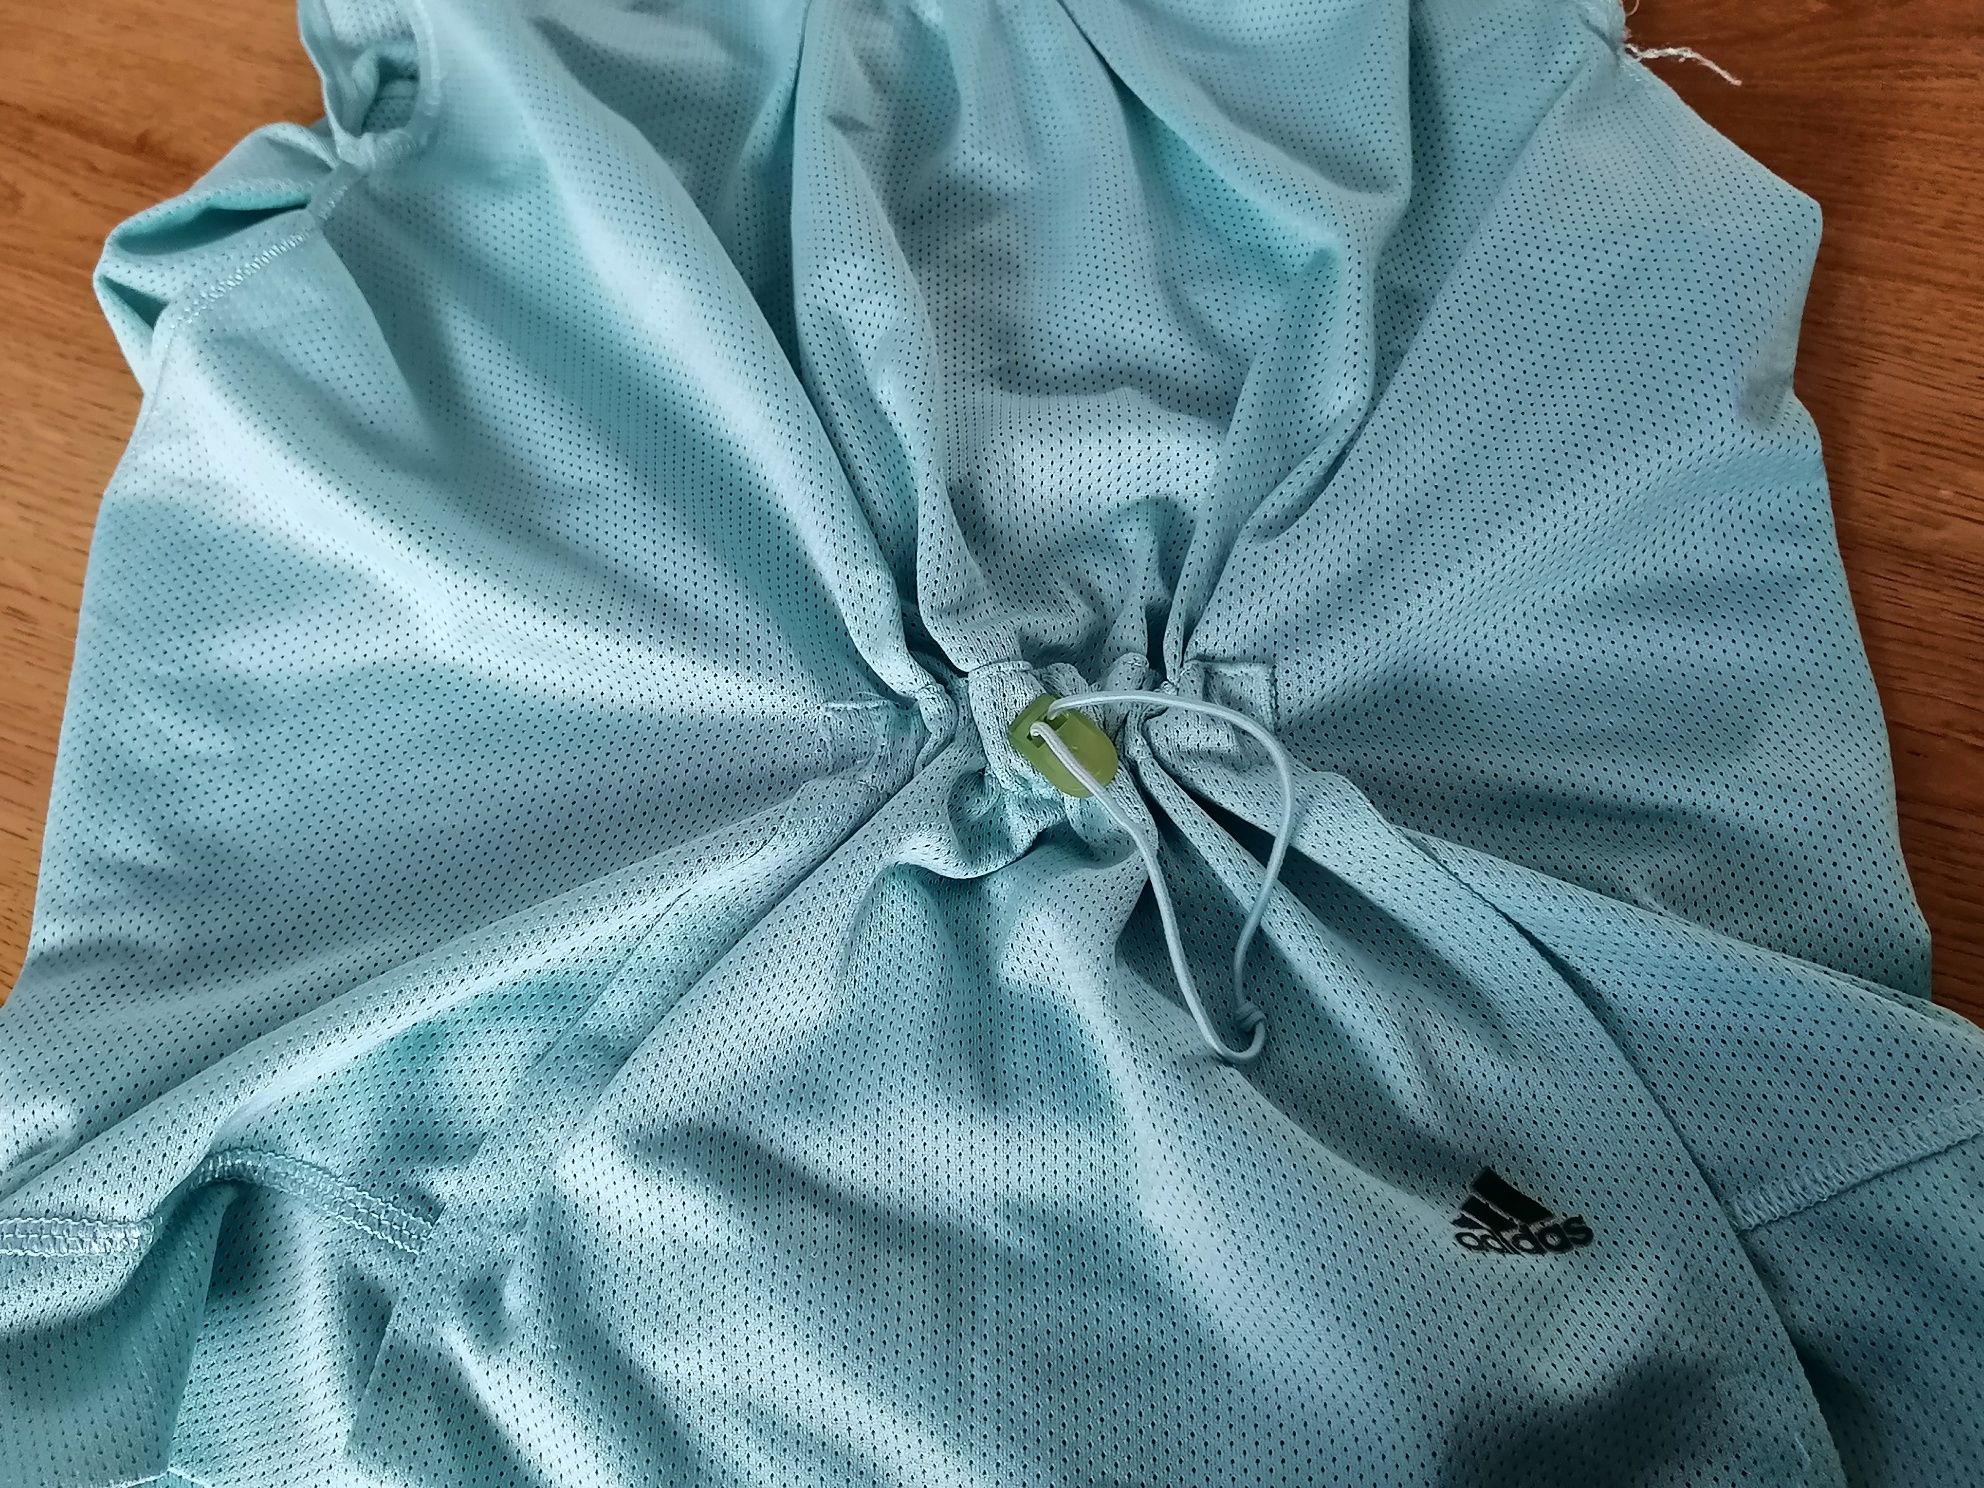 T-shirt Adidas Clima365 siateczka kolor baby blue. Stan bardzo dobry.